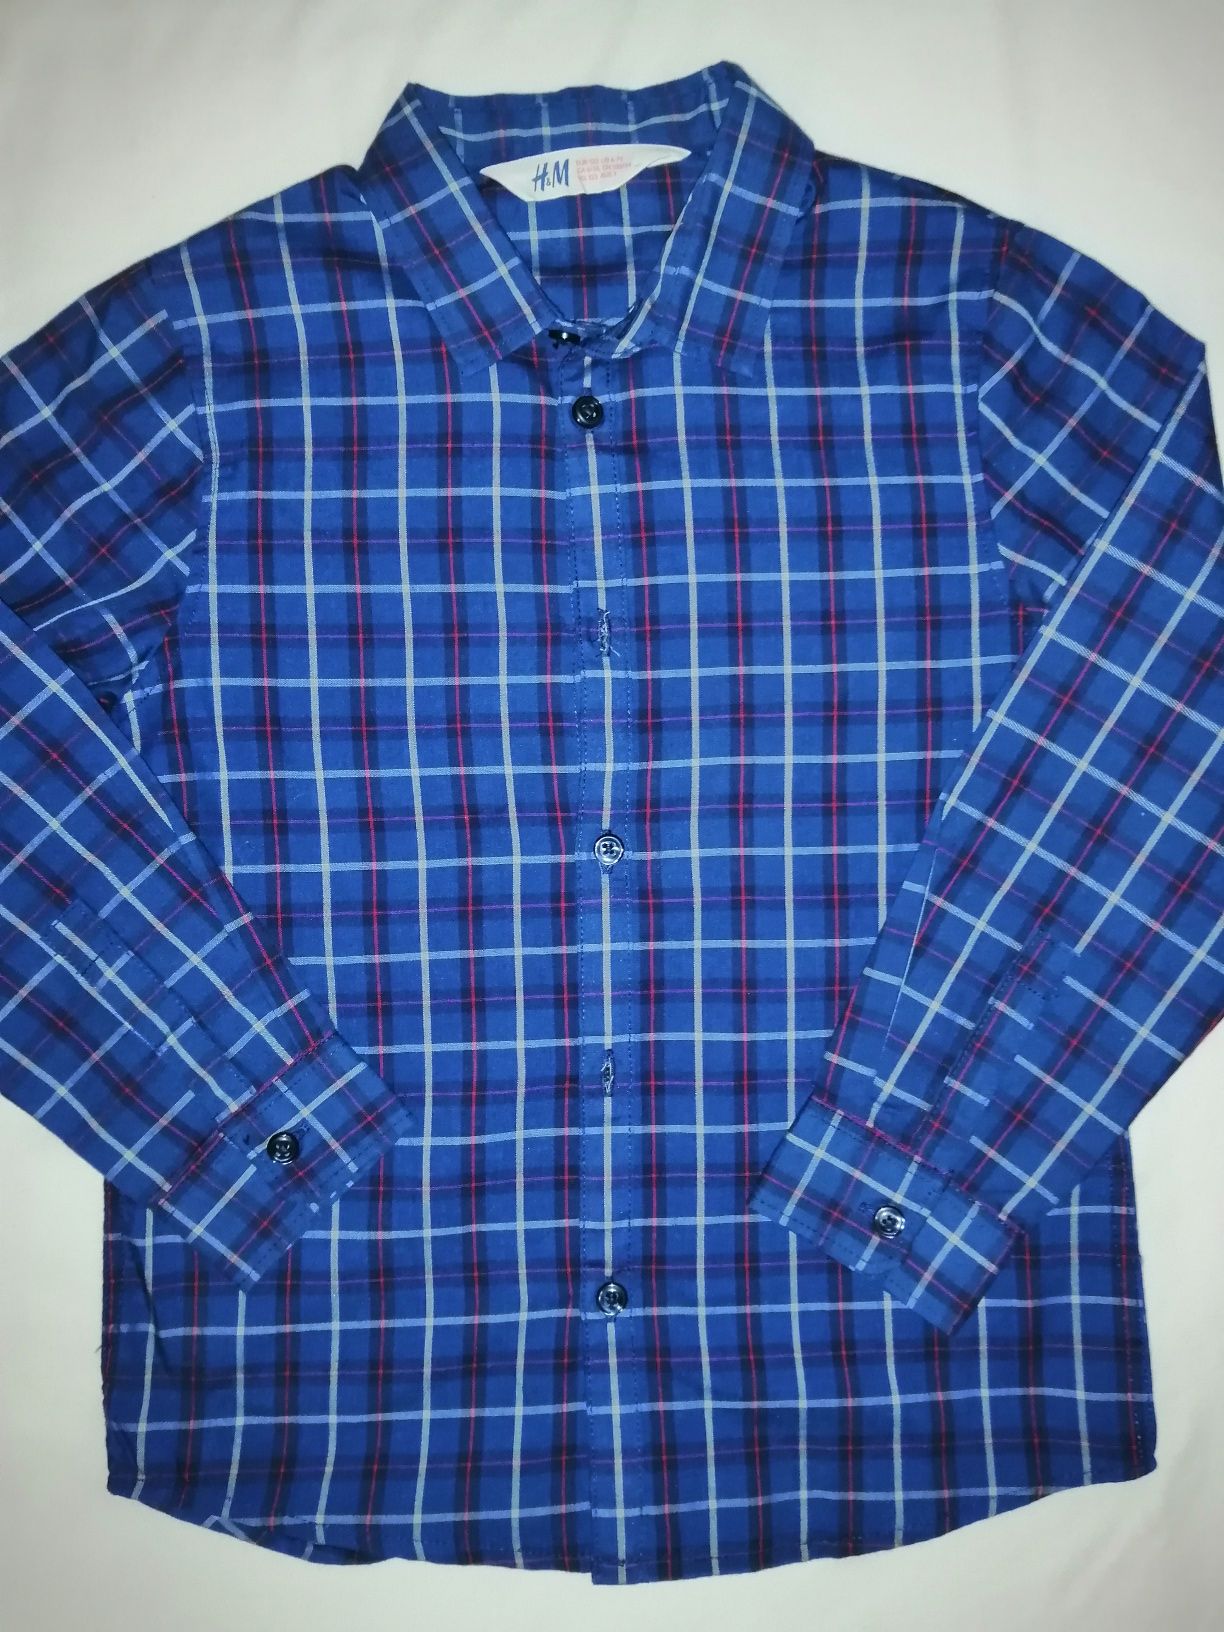 2x koszula r. 122 H&M ZARA w kratkę długim rękawem czerwona niebieska